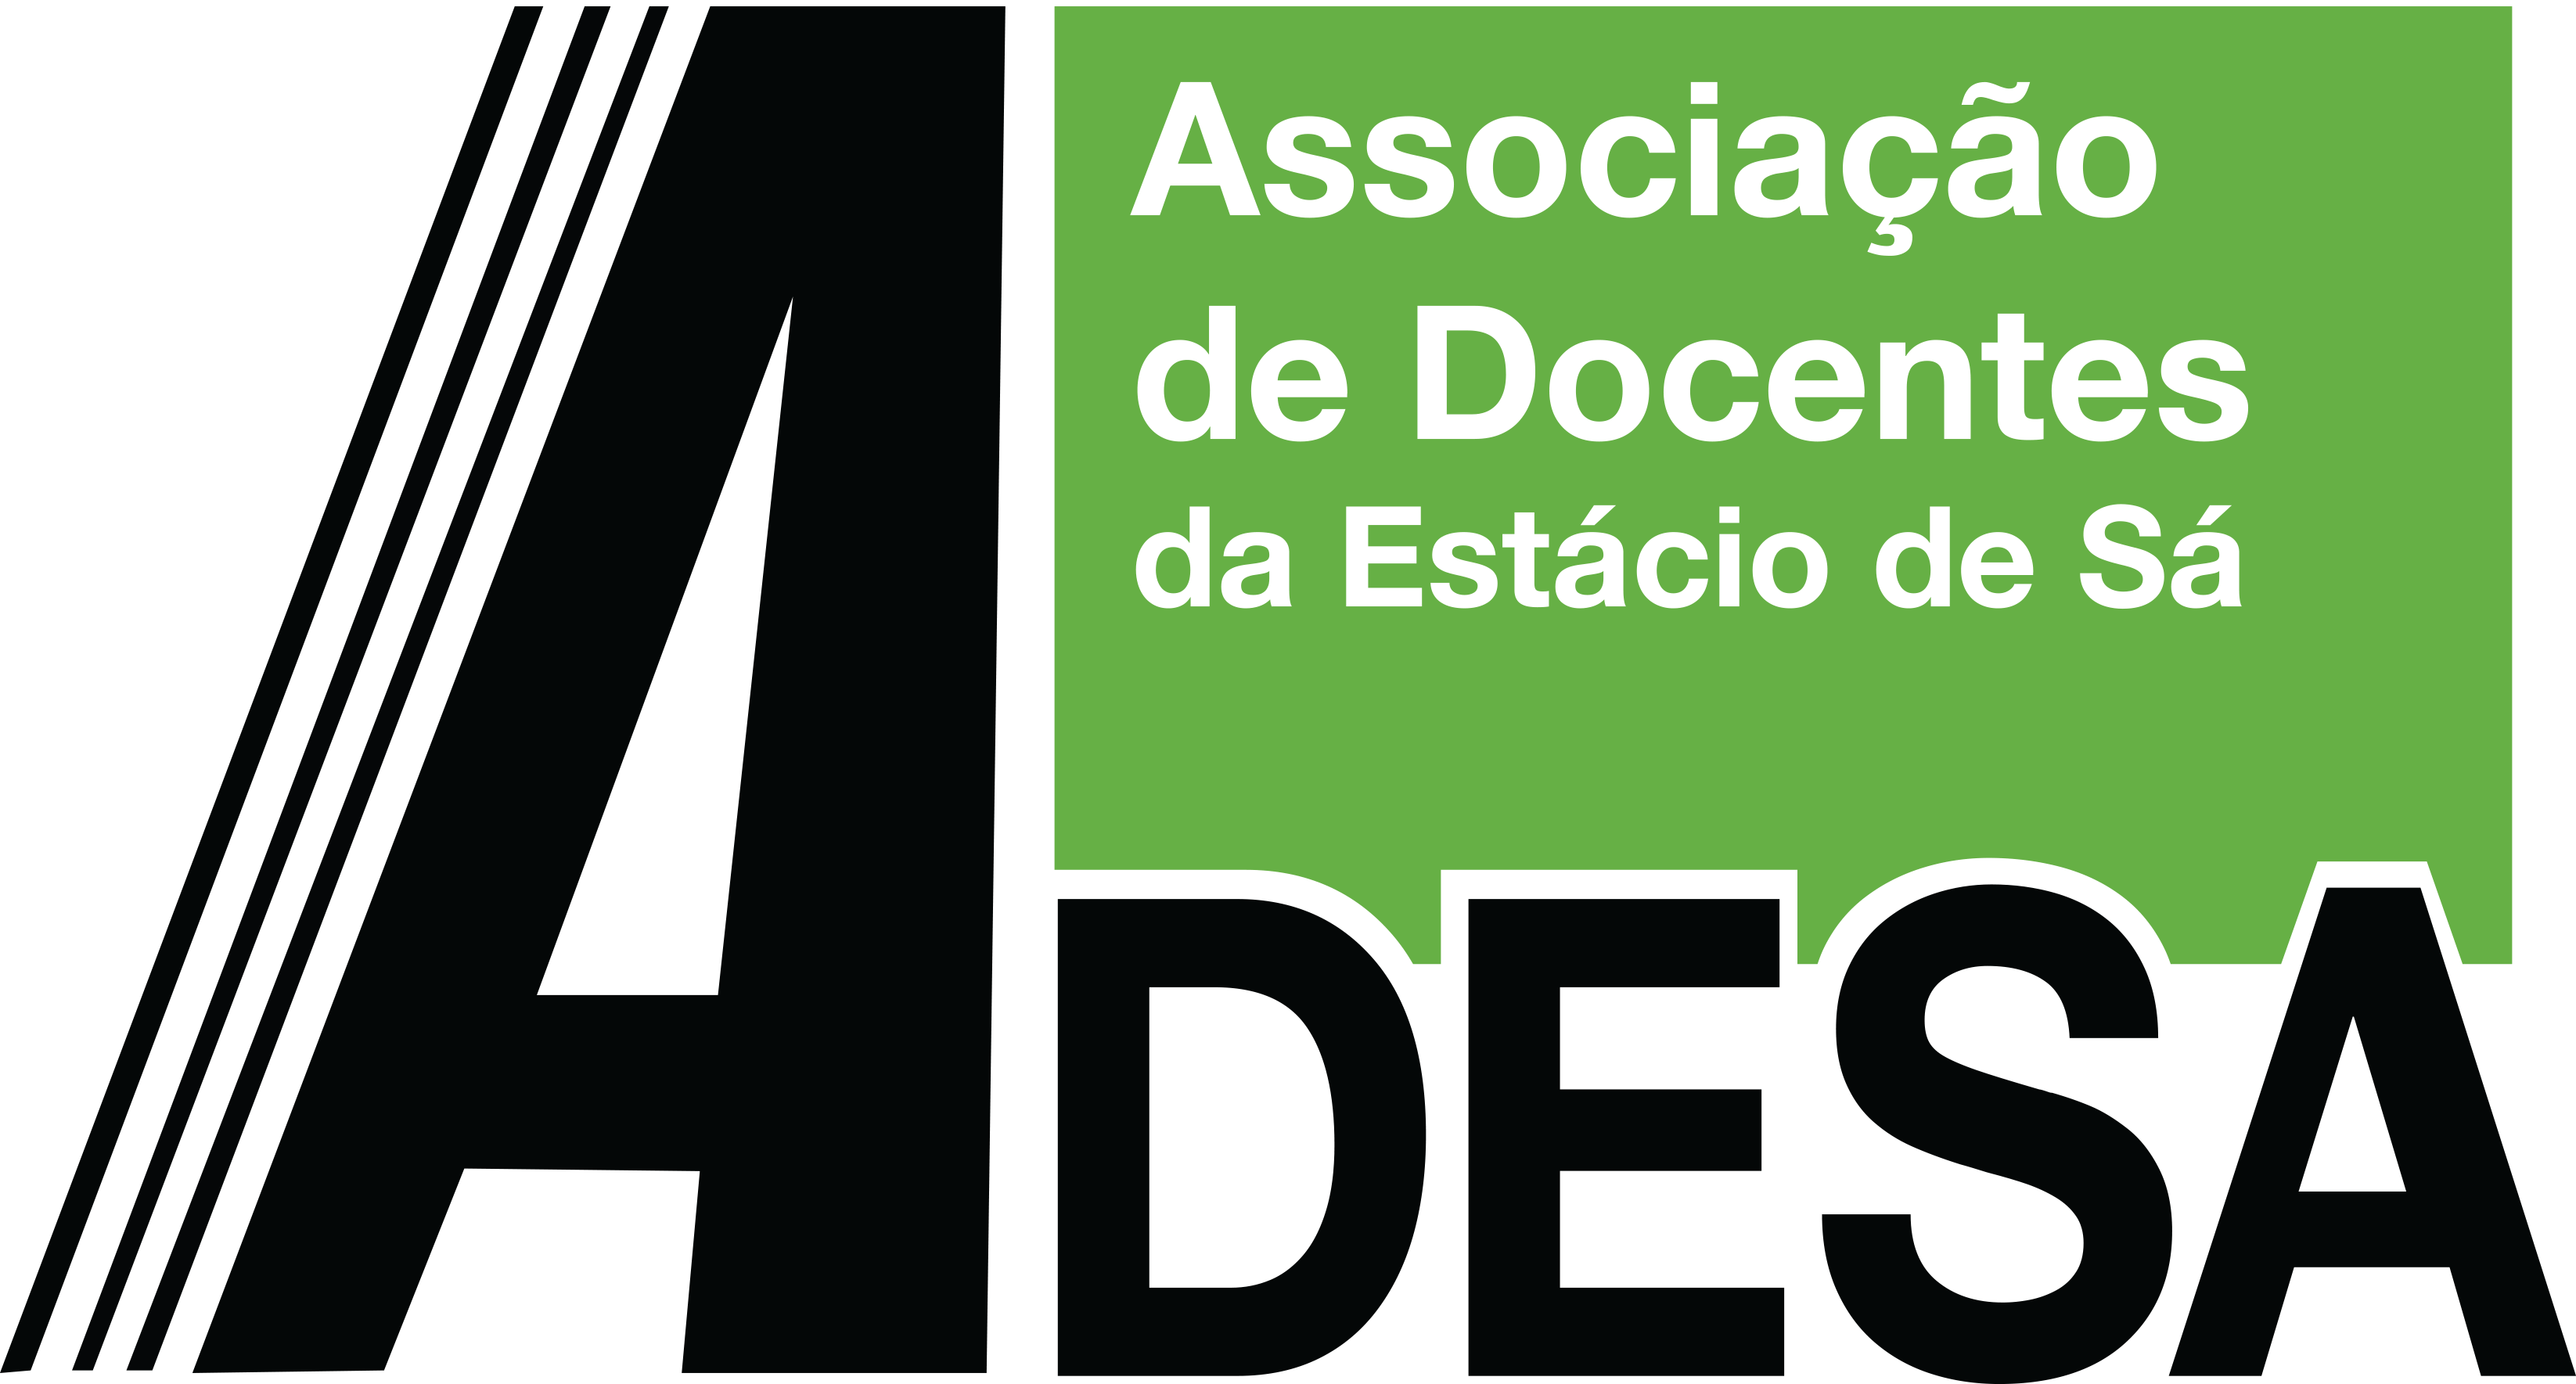 ADESA Logo - LOGO DA ADESA.png